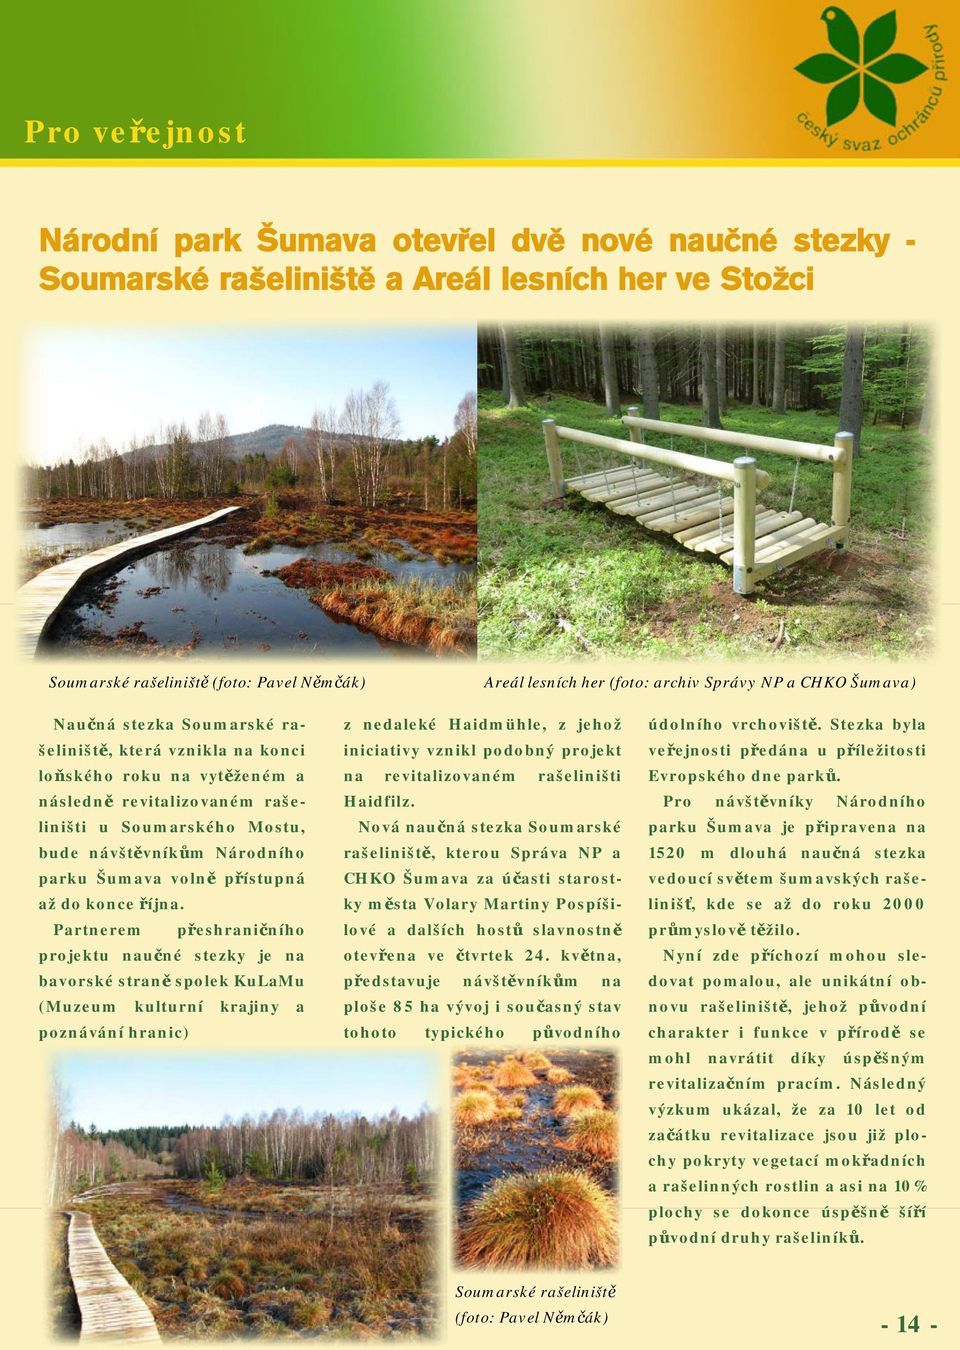 parku Šumava volně přístupná až do konce října.